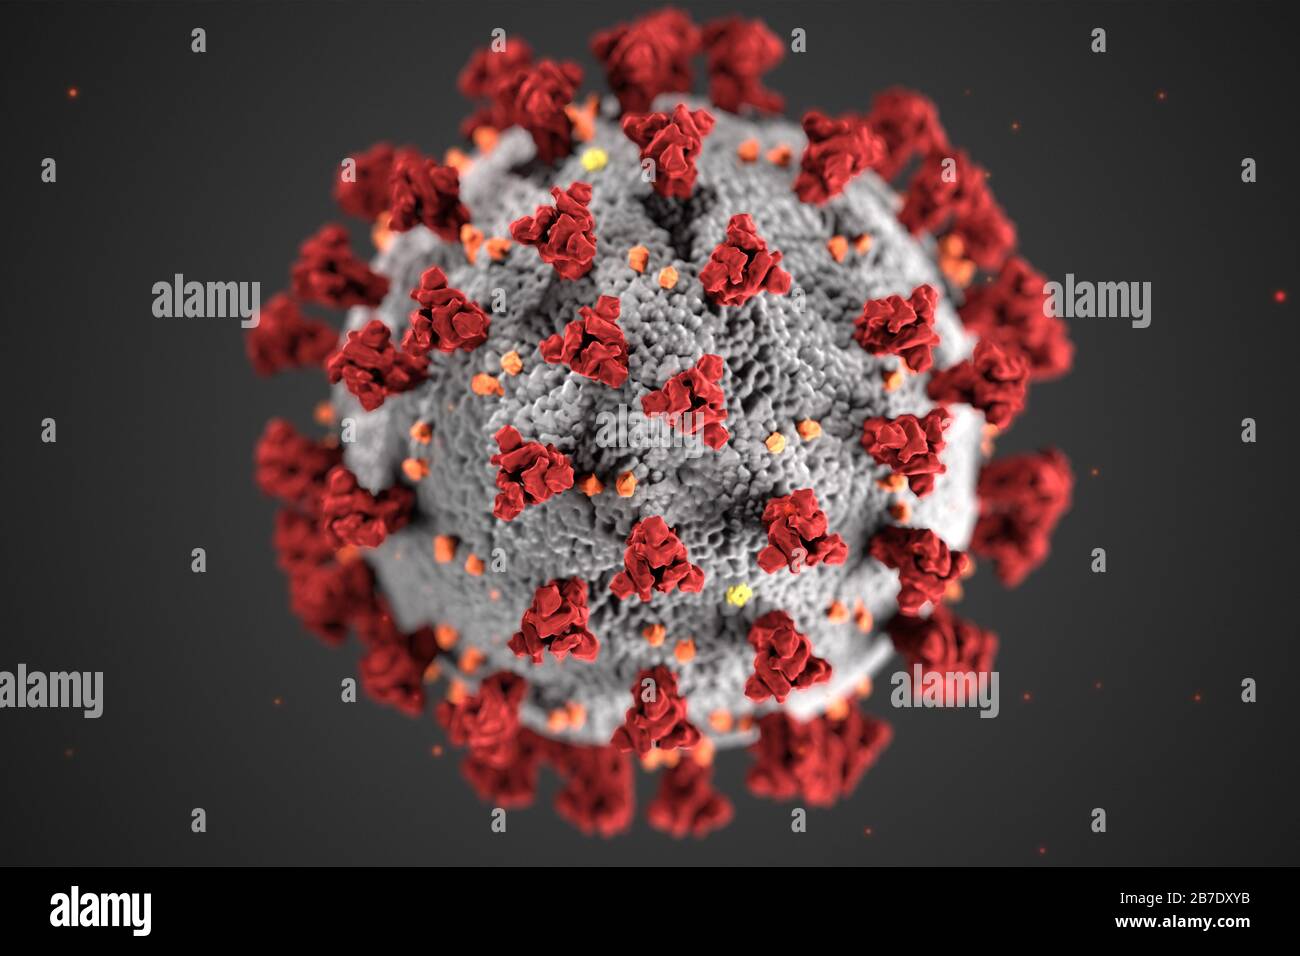 Diese Abbildung, die in den Centers for Disease Control and Prevention (CDC) erstellt wurde, zeigt die ultrastrukturelle Morphologie, die von Coronaviren ausgestellt wird. Beachten Sie die Spitzen, die die äußere Oberfläche des Virus schmücken, was den Blick auf eine Korona vermittelt, die das Virion umgibt, wenn es elektronenmikroskopisch betrachtet wird. Ein neuartiges Coronavirus mit dem Namen "Severe Acute Respiratory Syndrome Coronavirus 2" (SARS-COV-2) wurde 2019 als Ursache für einen Ausbruch einer Atemwegserkrankung identifiziert, die erstmals in Wuhan, China, entdeckt wurde. Die durch dieses Virus verursachte Krankheit wurde als Coronavirus disease 2019 (COVID-19) bezeichnet. Gutschrift: UPI/Al Stockfoto